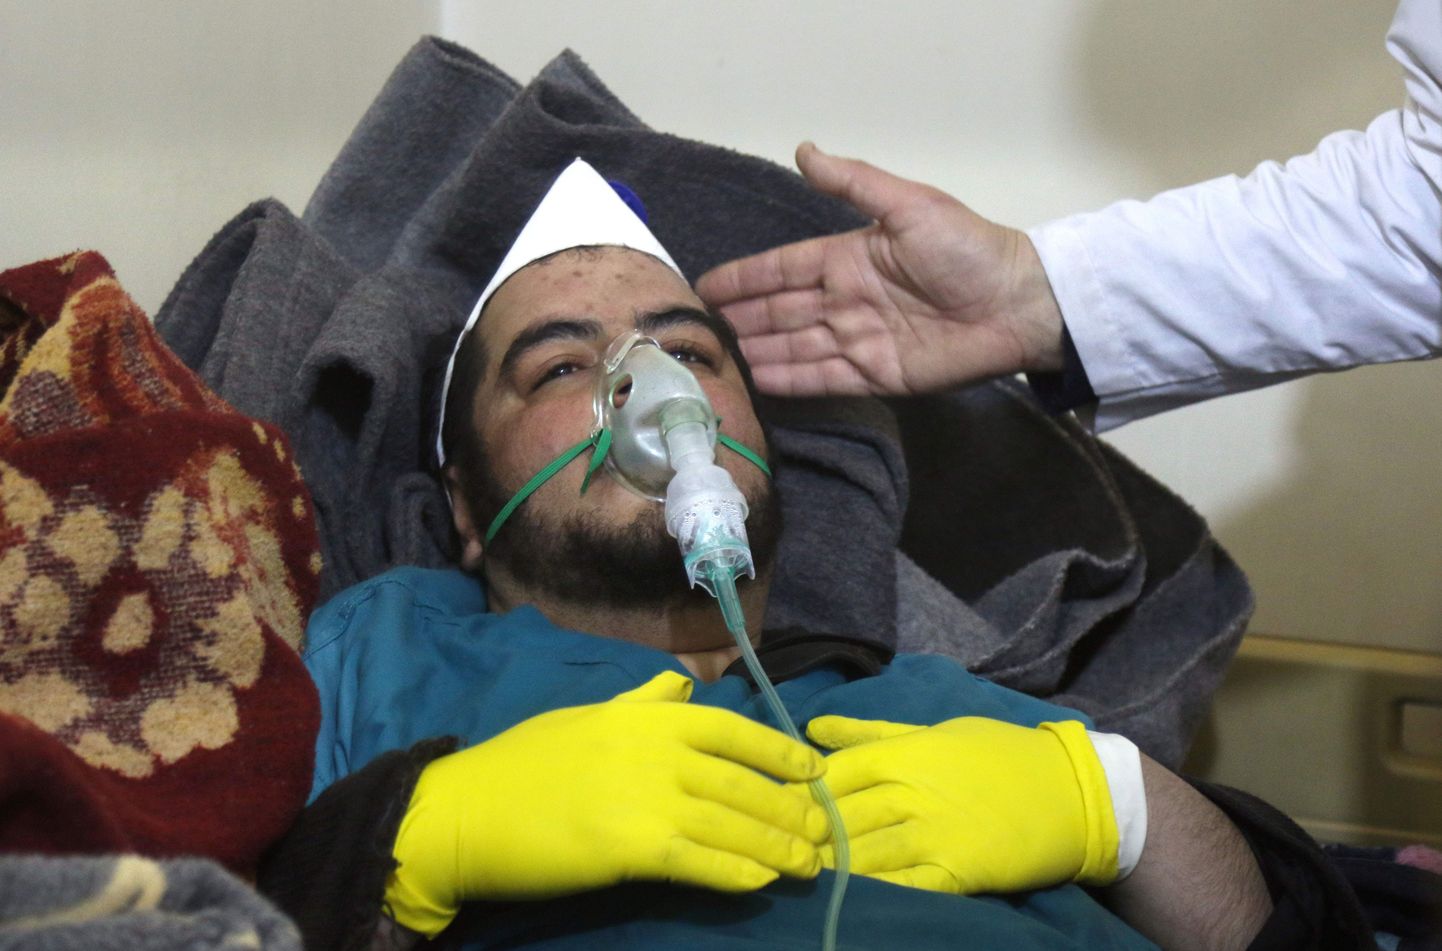 Khan Shaykhunis toimunud keemiarünnakus kannatada saanud mees ravi saamas.